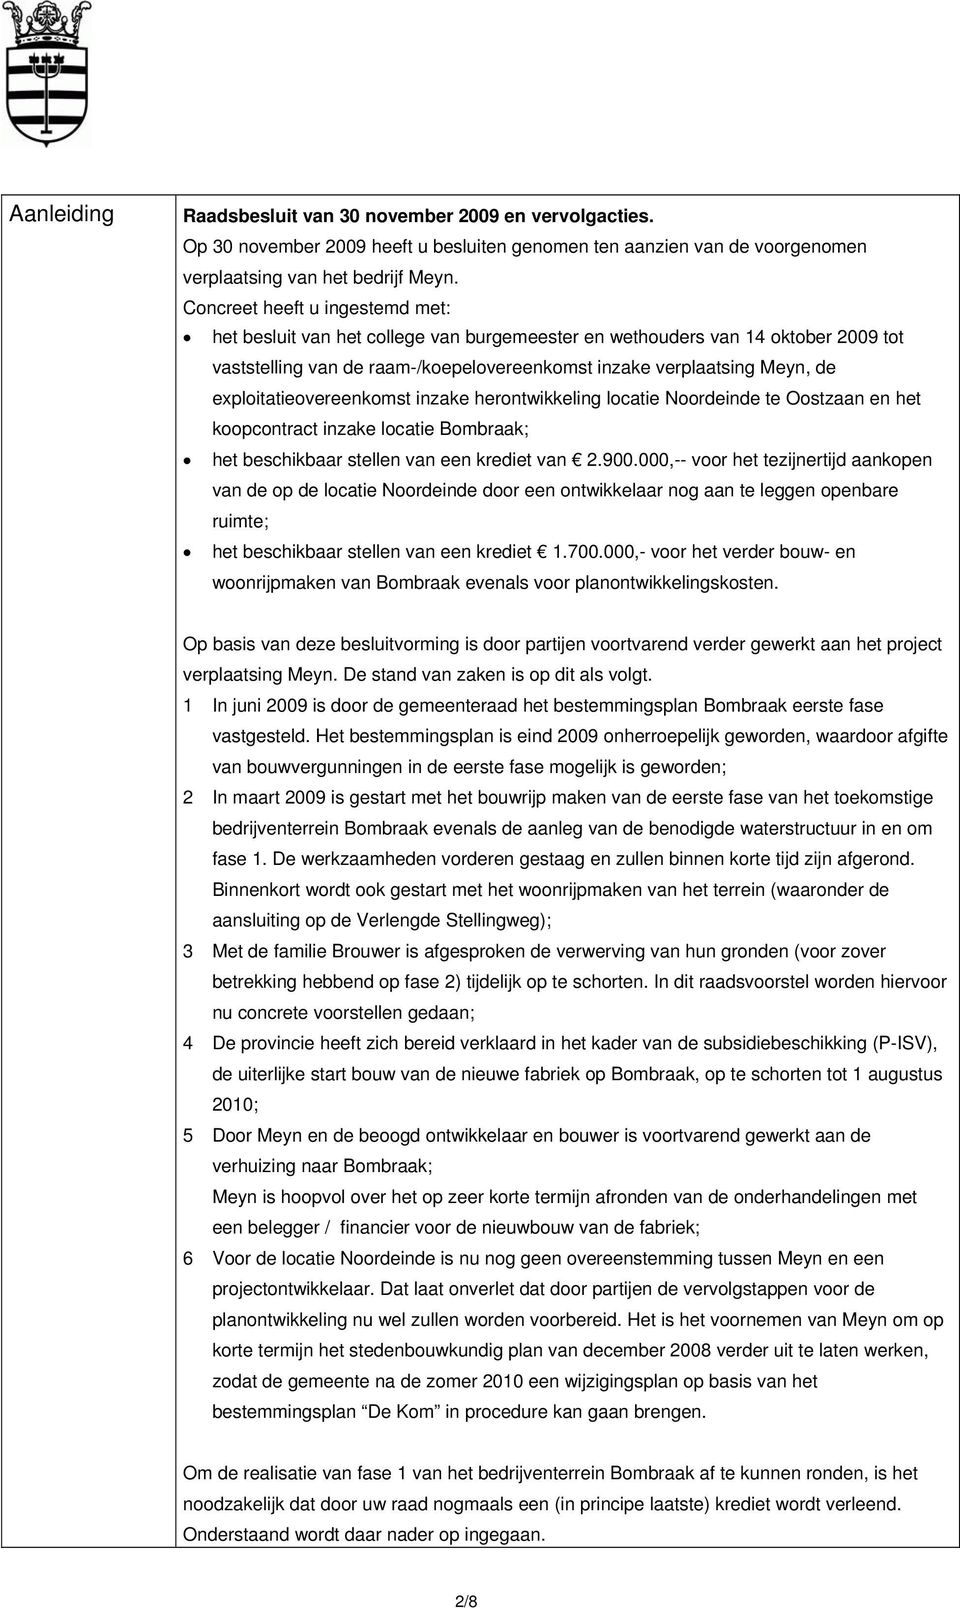 exploitatieovereenkomst inzake herontwikkeling locatie Noordeinde te Oostzaan en het koopcontract inzake locatie Bombraak; het beschikbaar stellen van een krediet van 2.900.